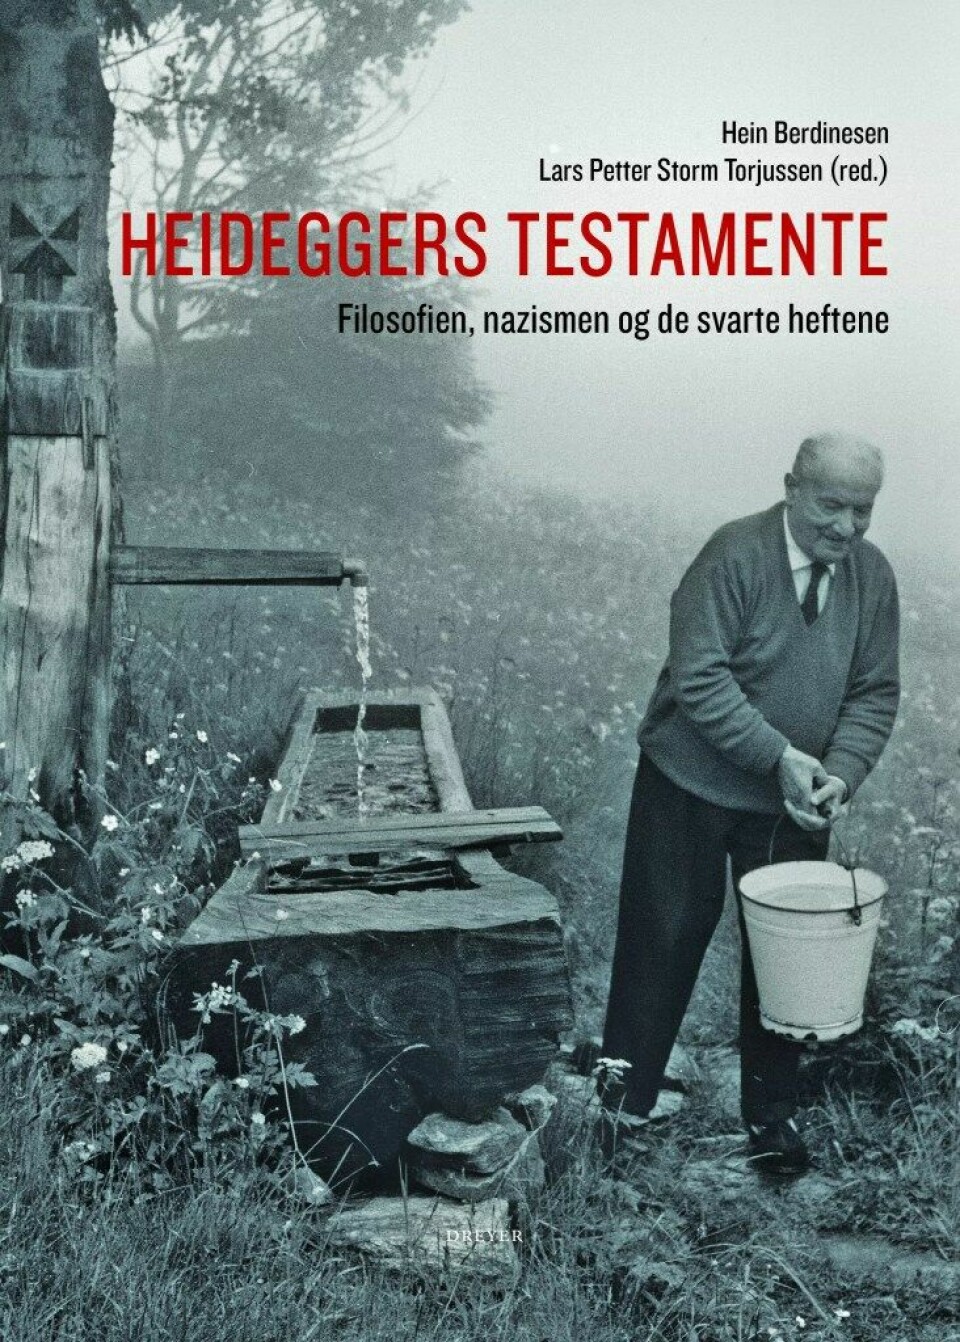 Heideggers testamente: Filosofien, nazismen og de svarte heftene. Dreyer forlag 2019